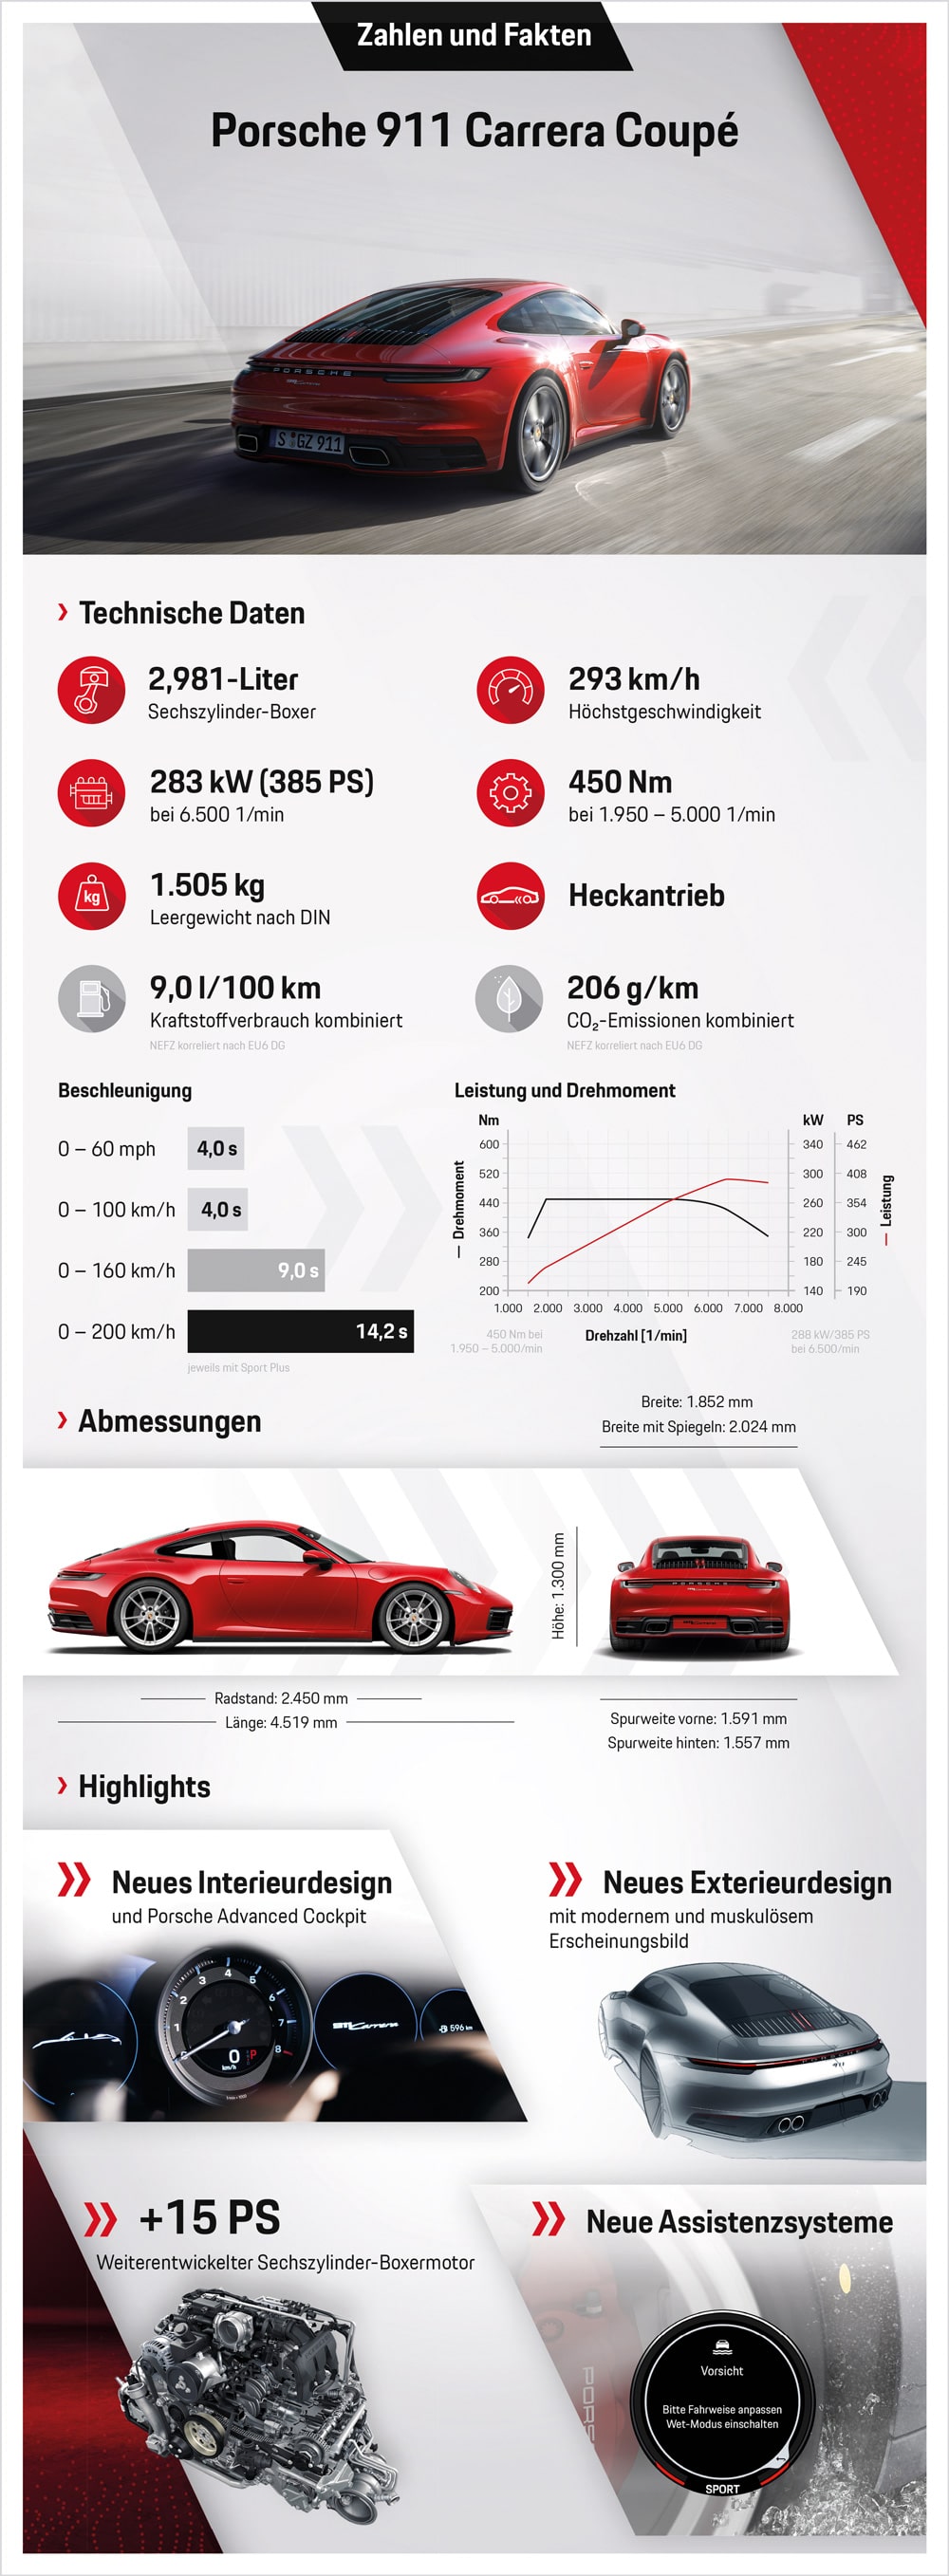 Porsche 911 Carrera Coupe Zahlen & Fakten auf einen Blick © Porsche AG